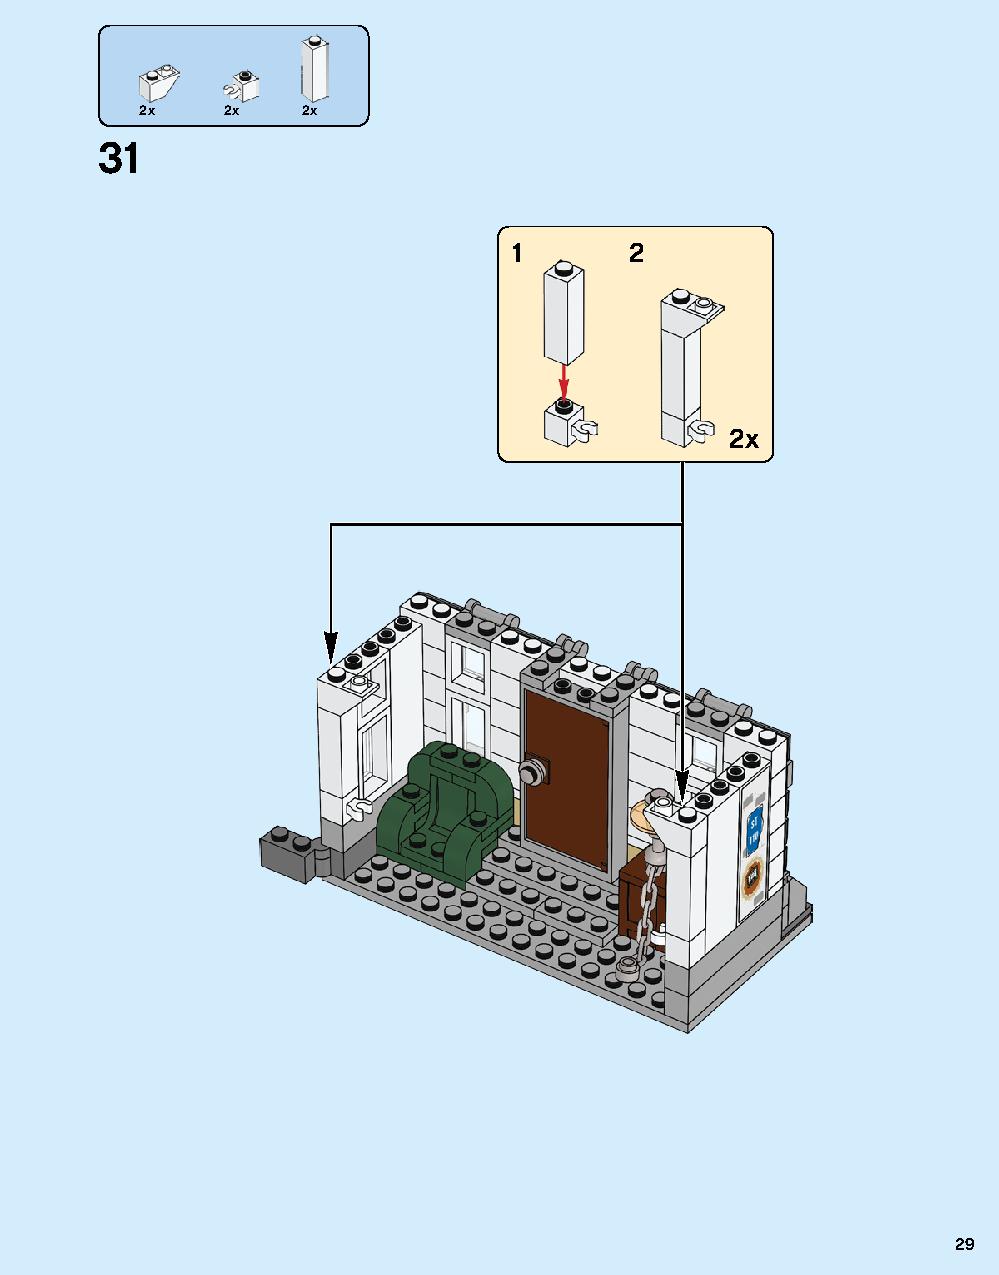 ドクター・ストレンジの神聖な館での戦い 76108 レゴの商品情報 レゴの説明書・組立方法 29 page